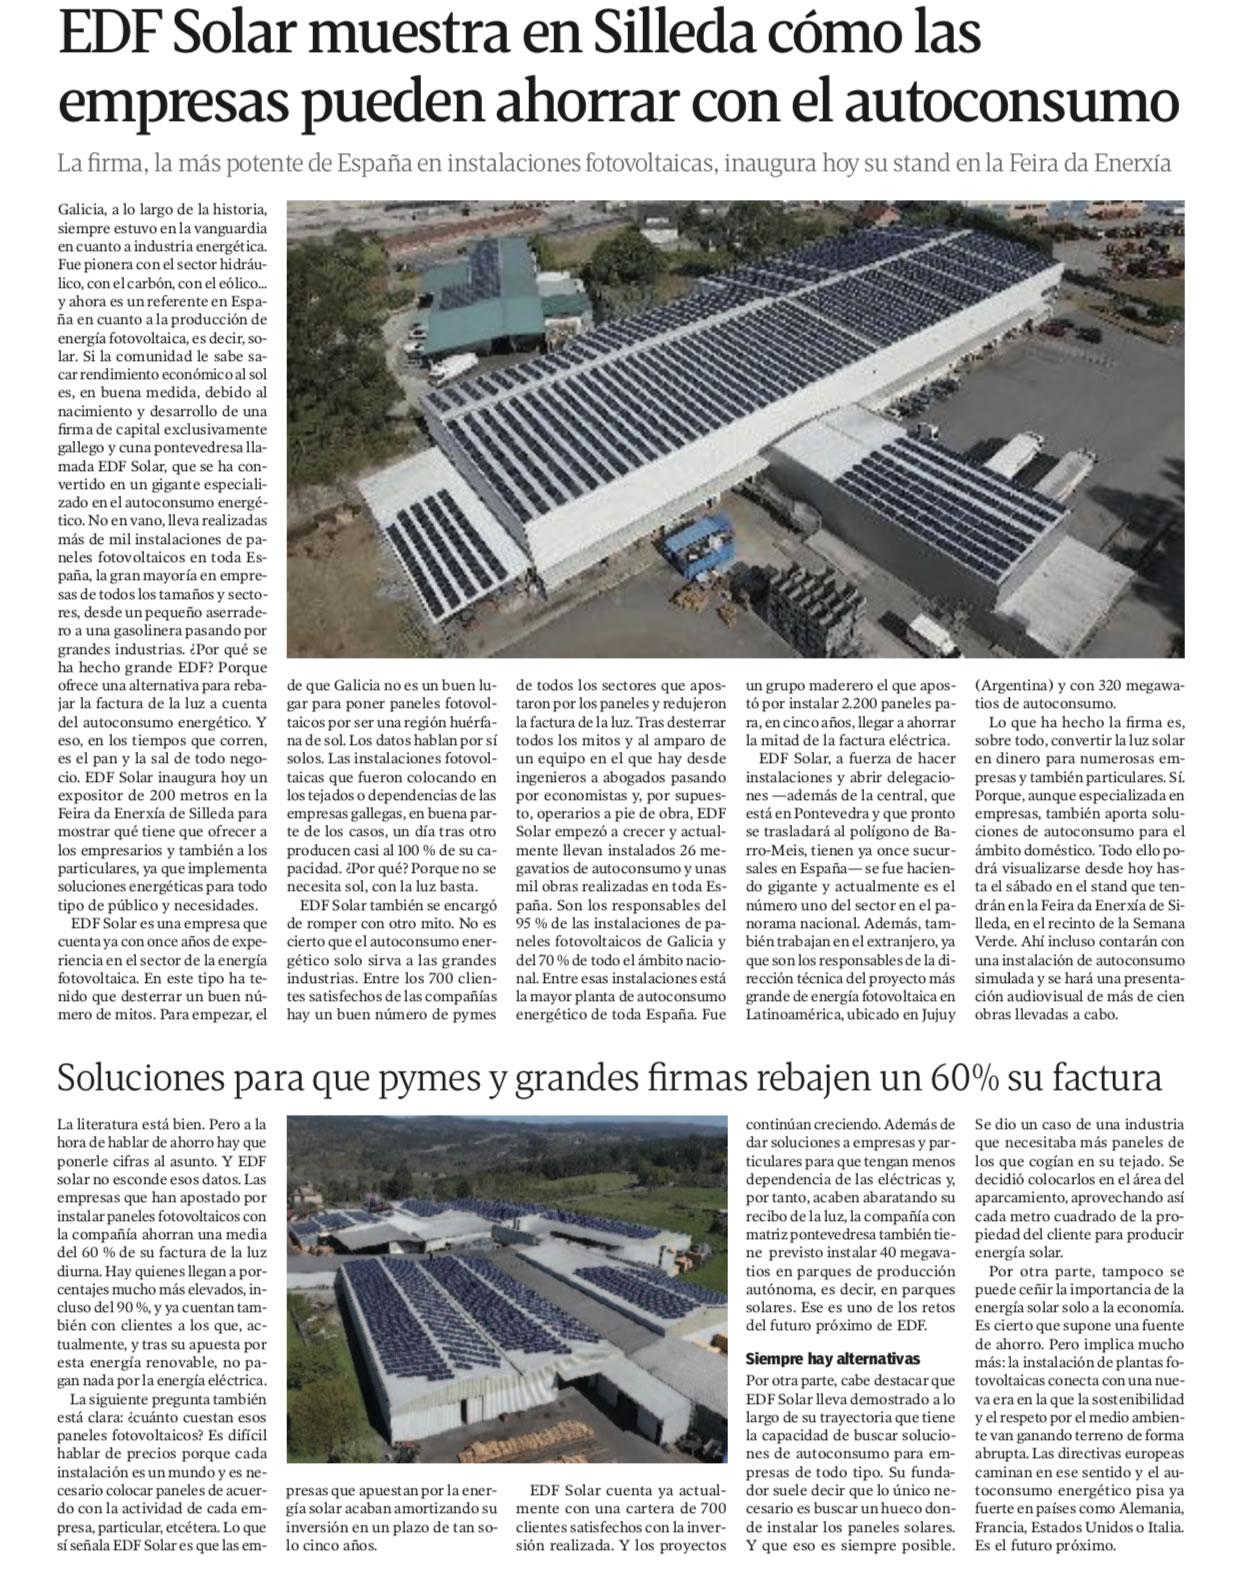 Articulo especial sobre Eidf Solar en La Voz de Galicia